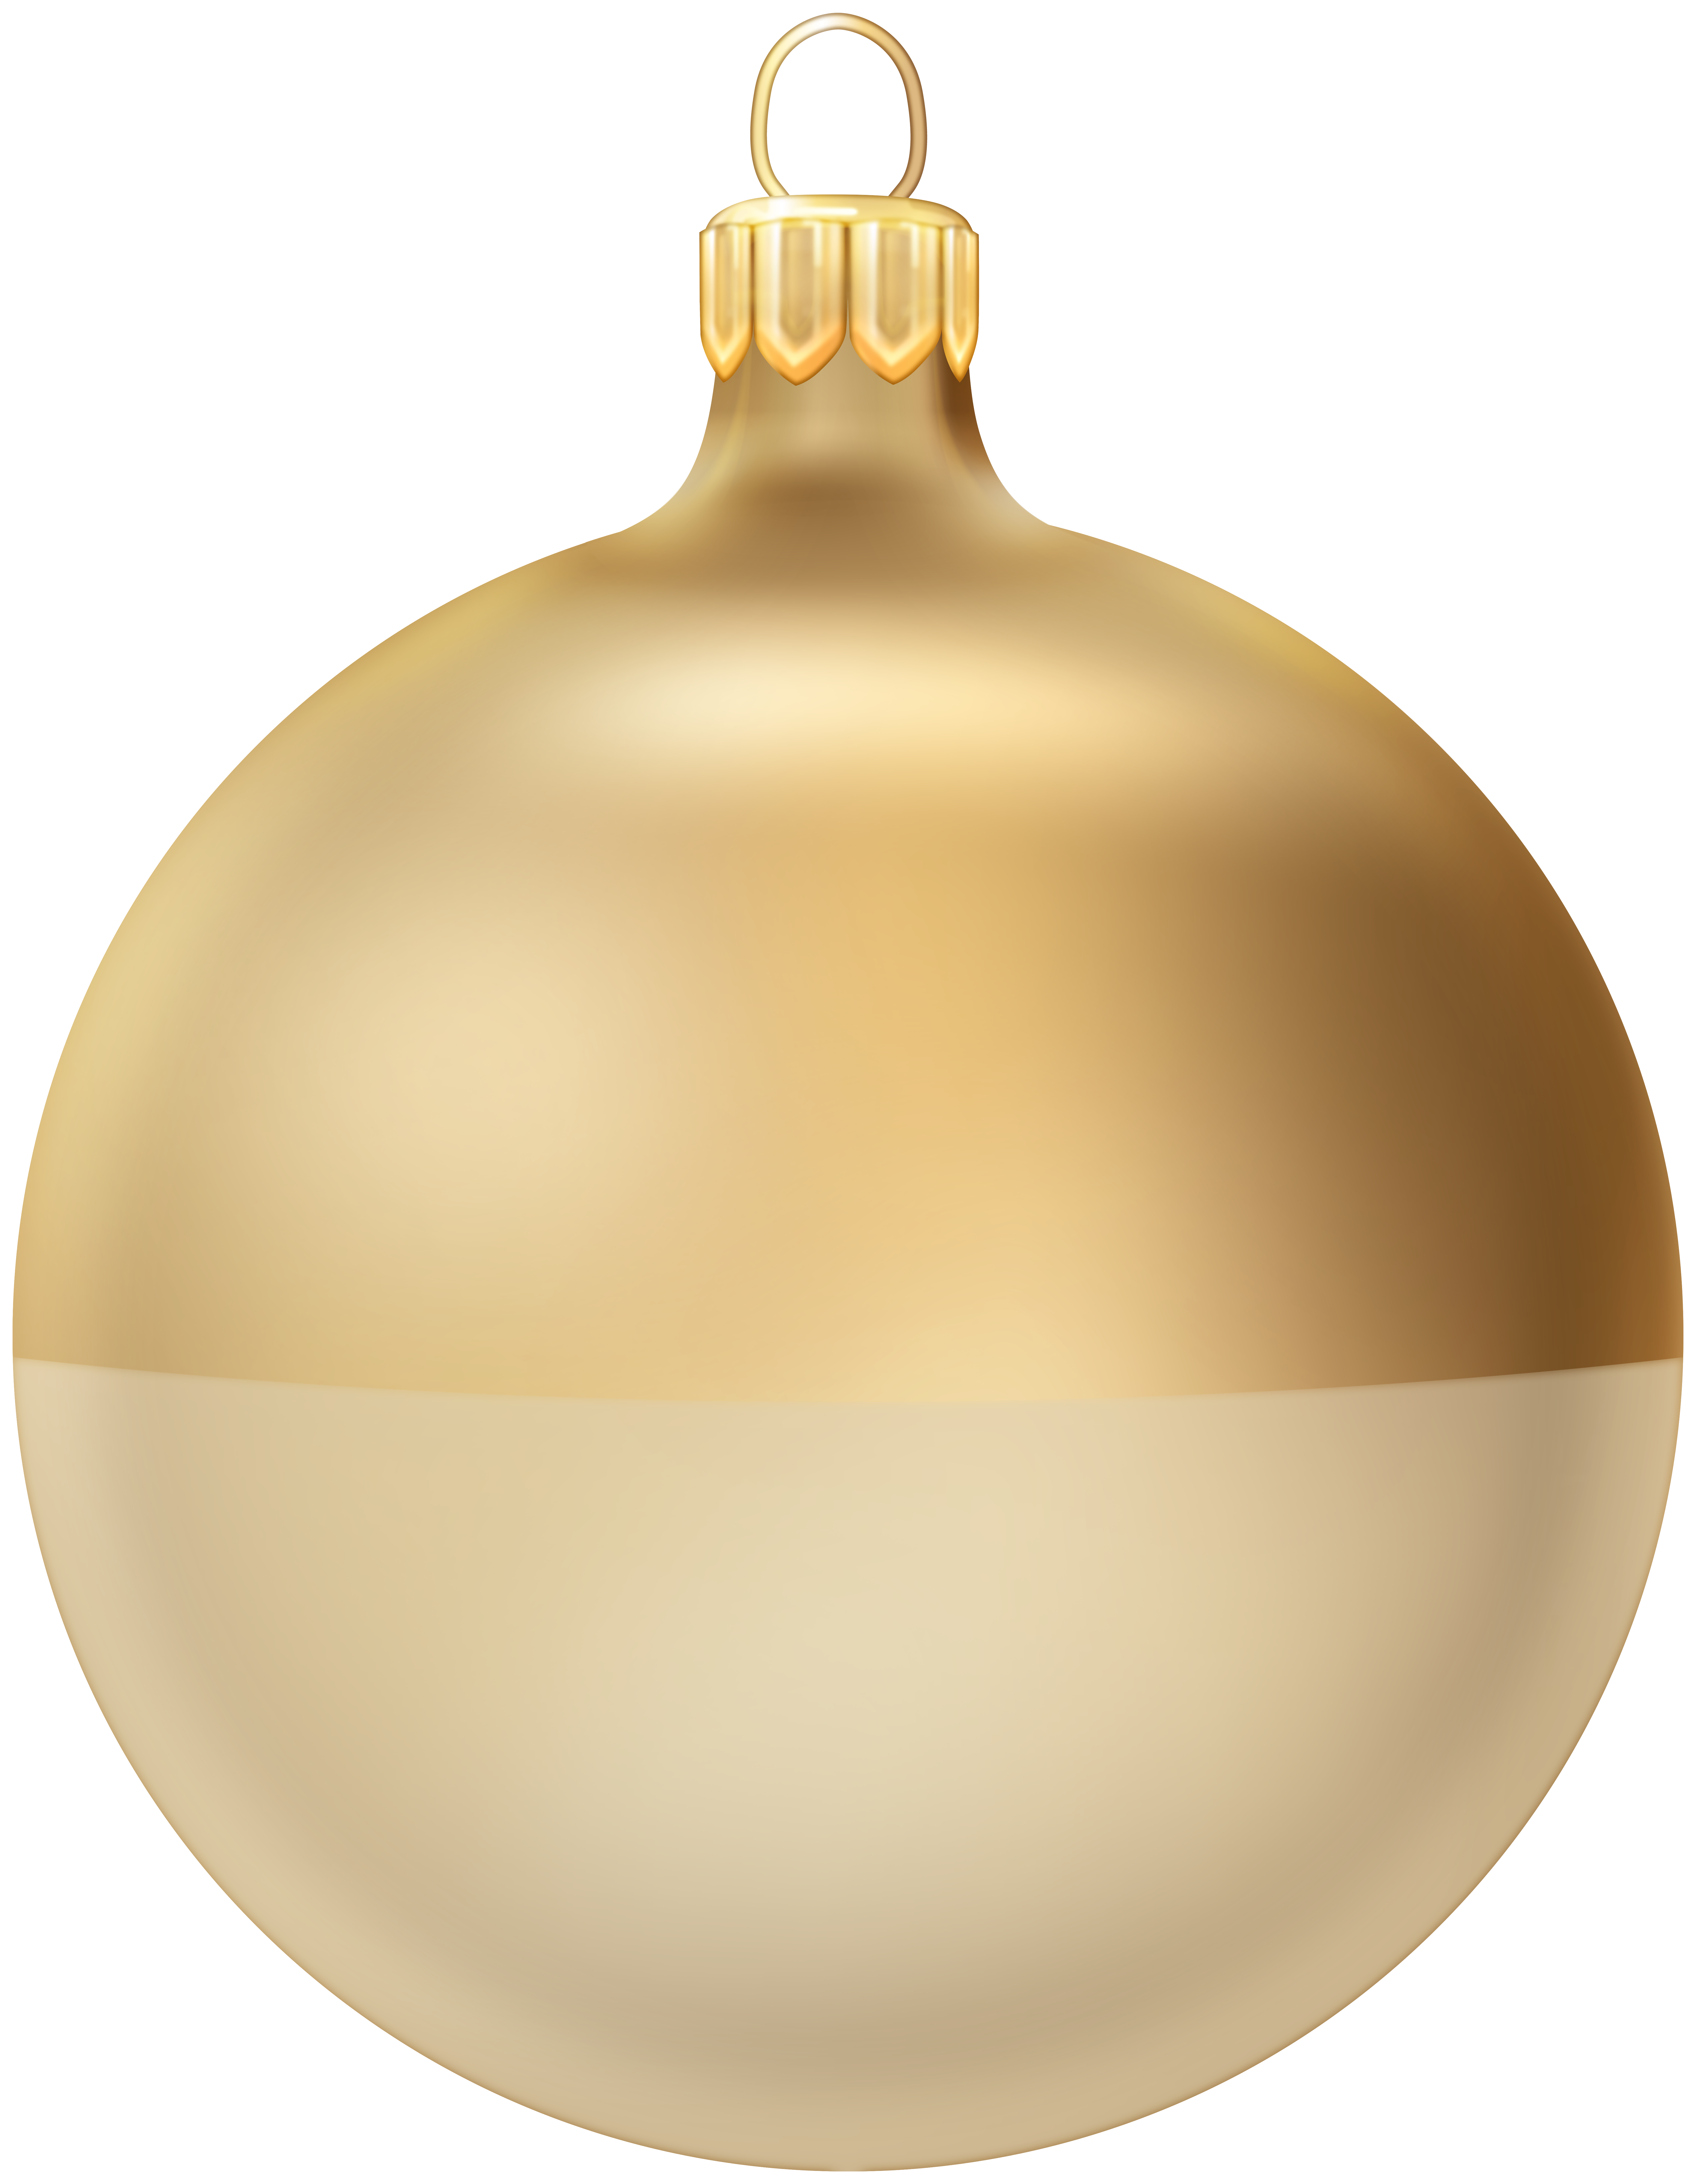 Xmas Golden Ball Ornament PNG Clipart.